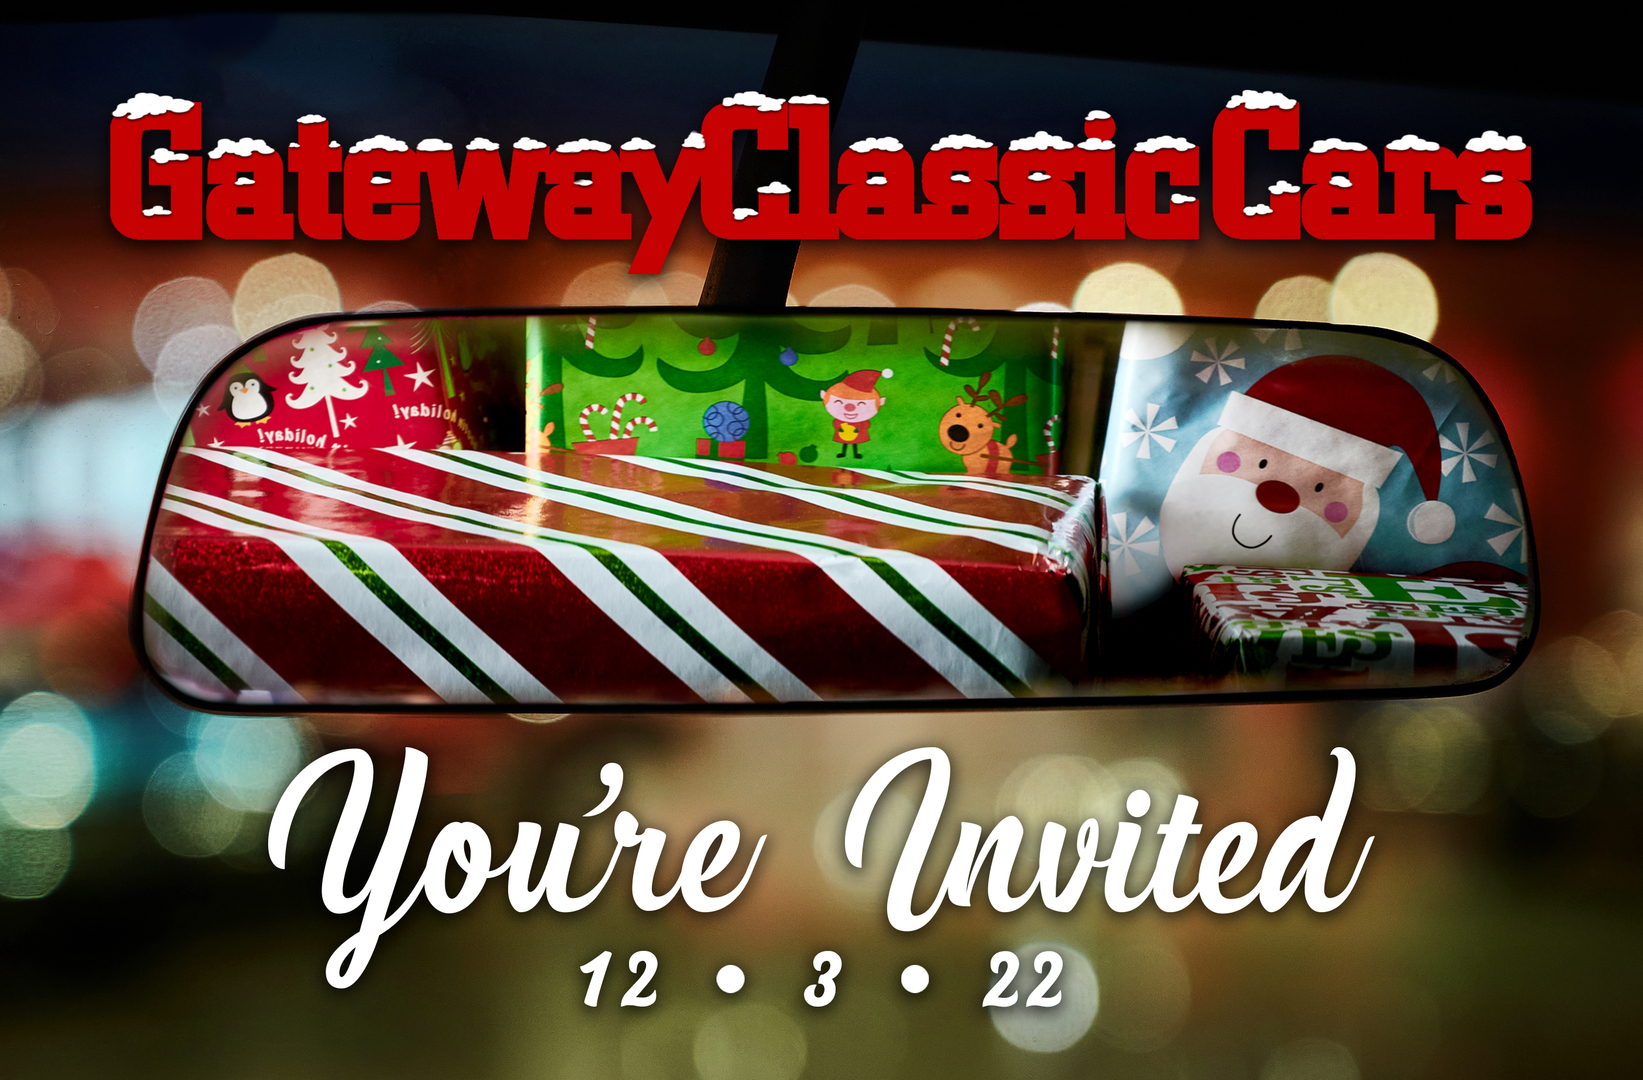 Gateway Classic Cars of Kansas City - Holiday Party, Olathe, Kansas, United States